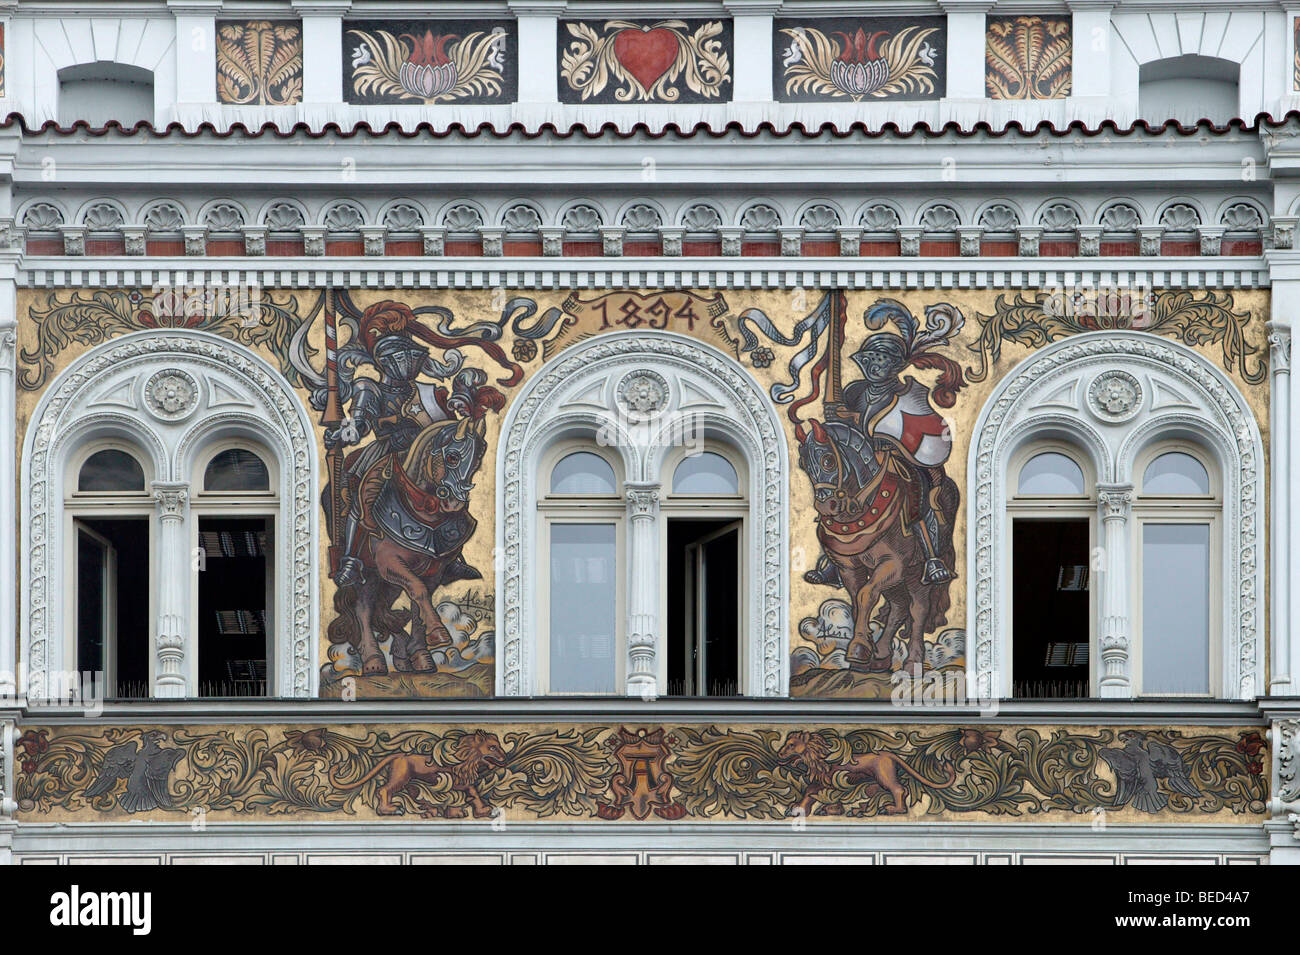 Façades Renaissance avec peintures sgraffite sur la place de la République à Pilsen, Plzen, République Tchèque, République tchèque, Eur Banque D'Images